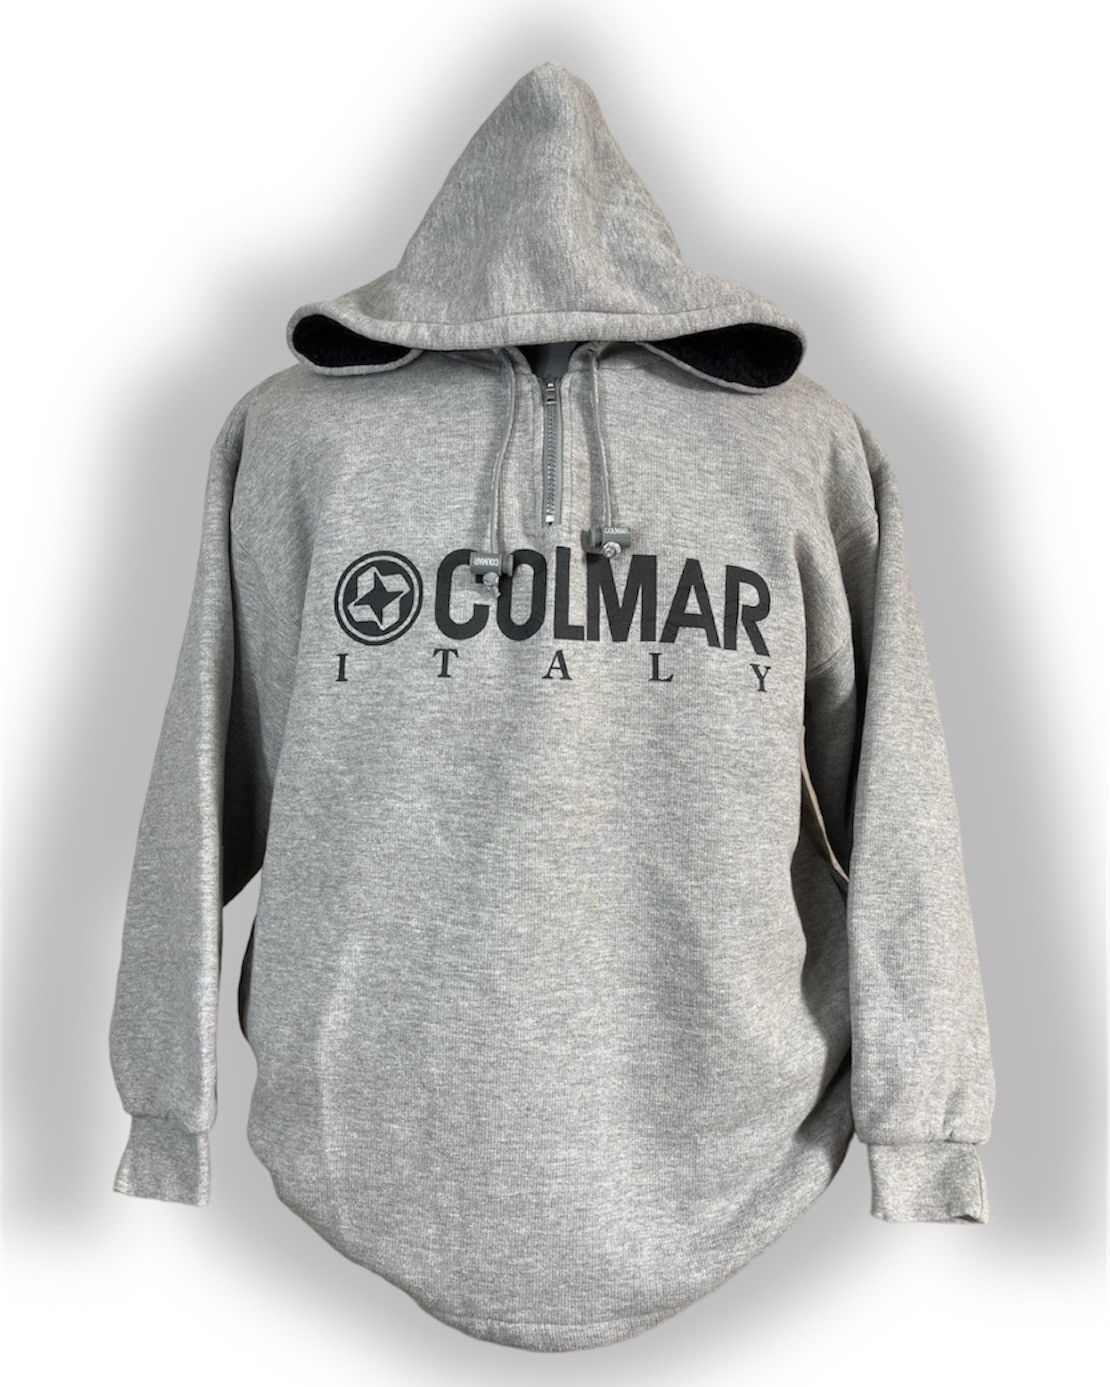 Colmar Italy Hood By Air Hoodie Cotton Wool Streetwear - 1